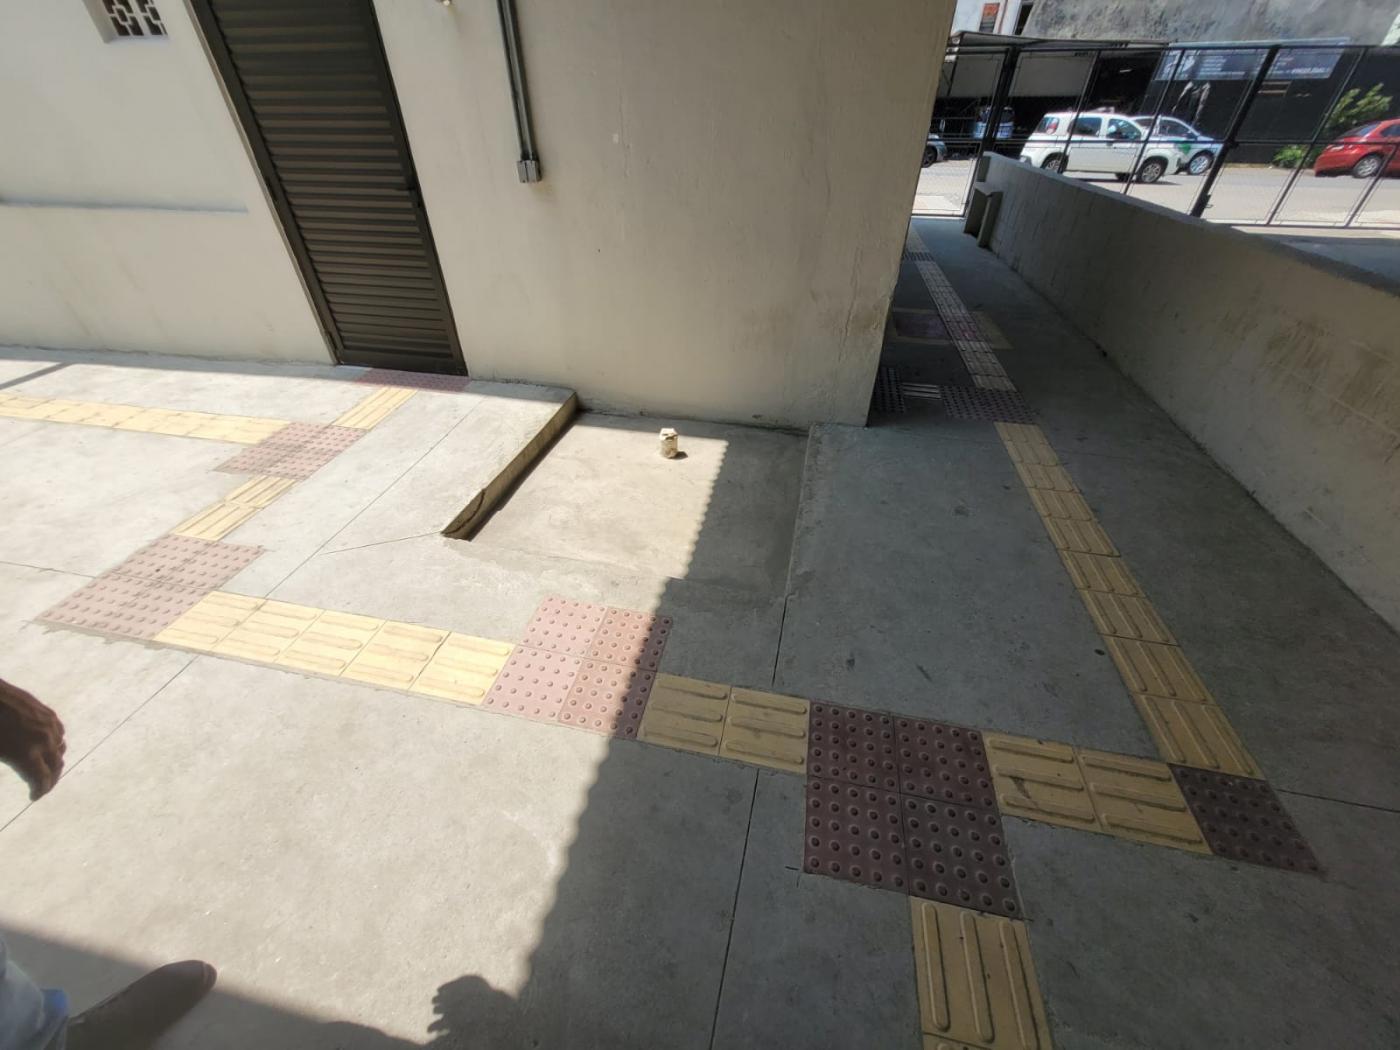 piso em concreto com adesivo de piso podotátil. #paratodosverem 